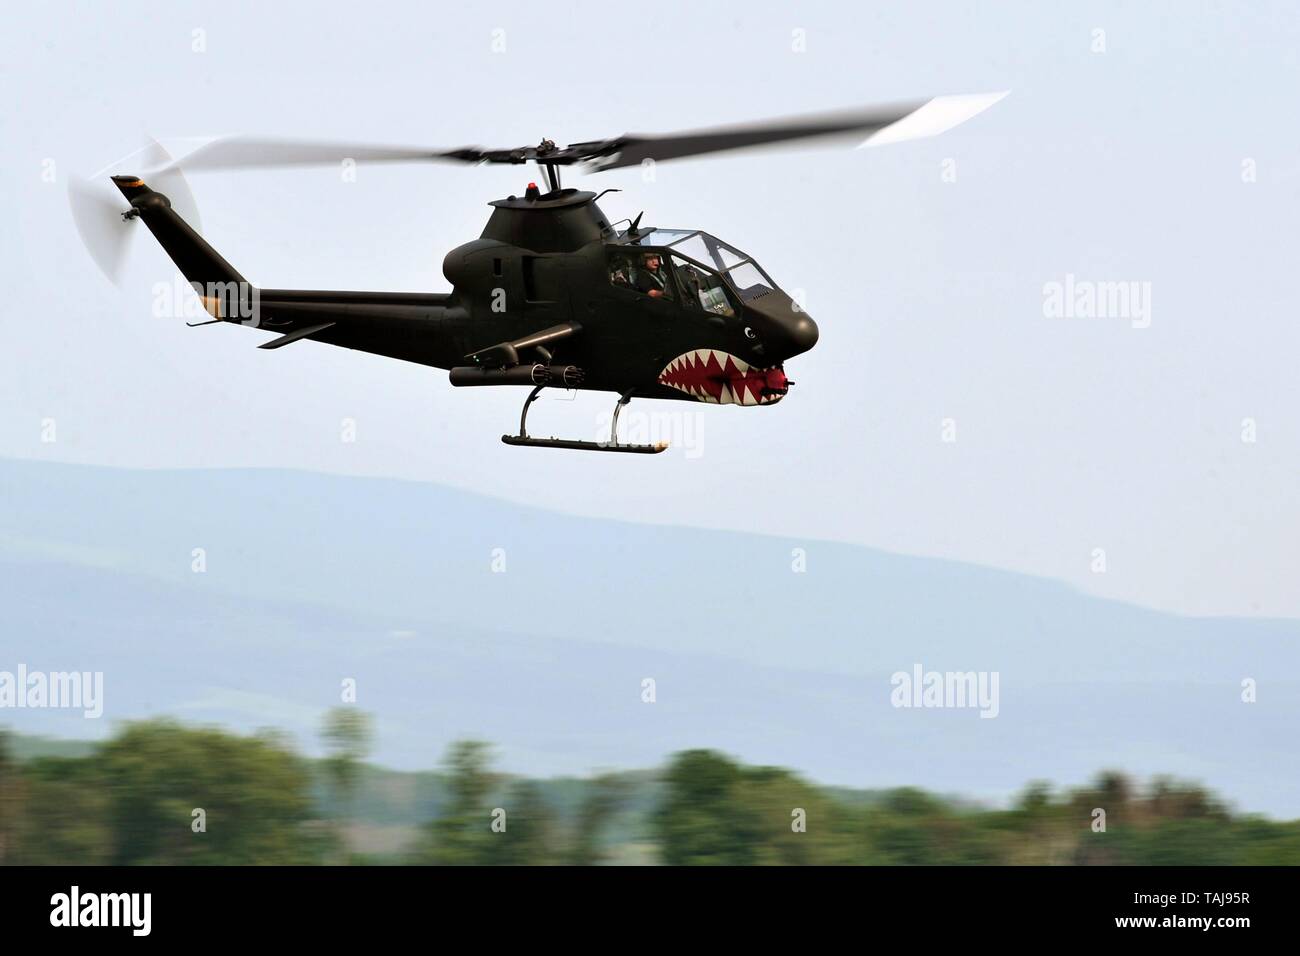 Jaromer, Repubblica Ceca. 25 Maggio, 2019. Bell AH-1 Cobra durante show acrobatico a Jaromer Aeroporto in Repubblica ceca.La Campana AH-1 Cobra è un due-lama, mono-motore elicottero d'assalto fabbricato da Bell Helicopter. È stato sviluppato utilizzando il motore, la trasmissione e il sistema del rotore del Bell UH-1 Iroquois. Un membro della prolifica famiglia Huey, AH-1 è anche denominato HueyCobra o Snake. Credito: Slavek Ruta/ZUMA filo/Alamy Live News Foto Stock